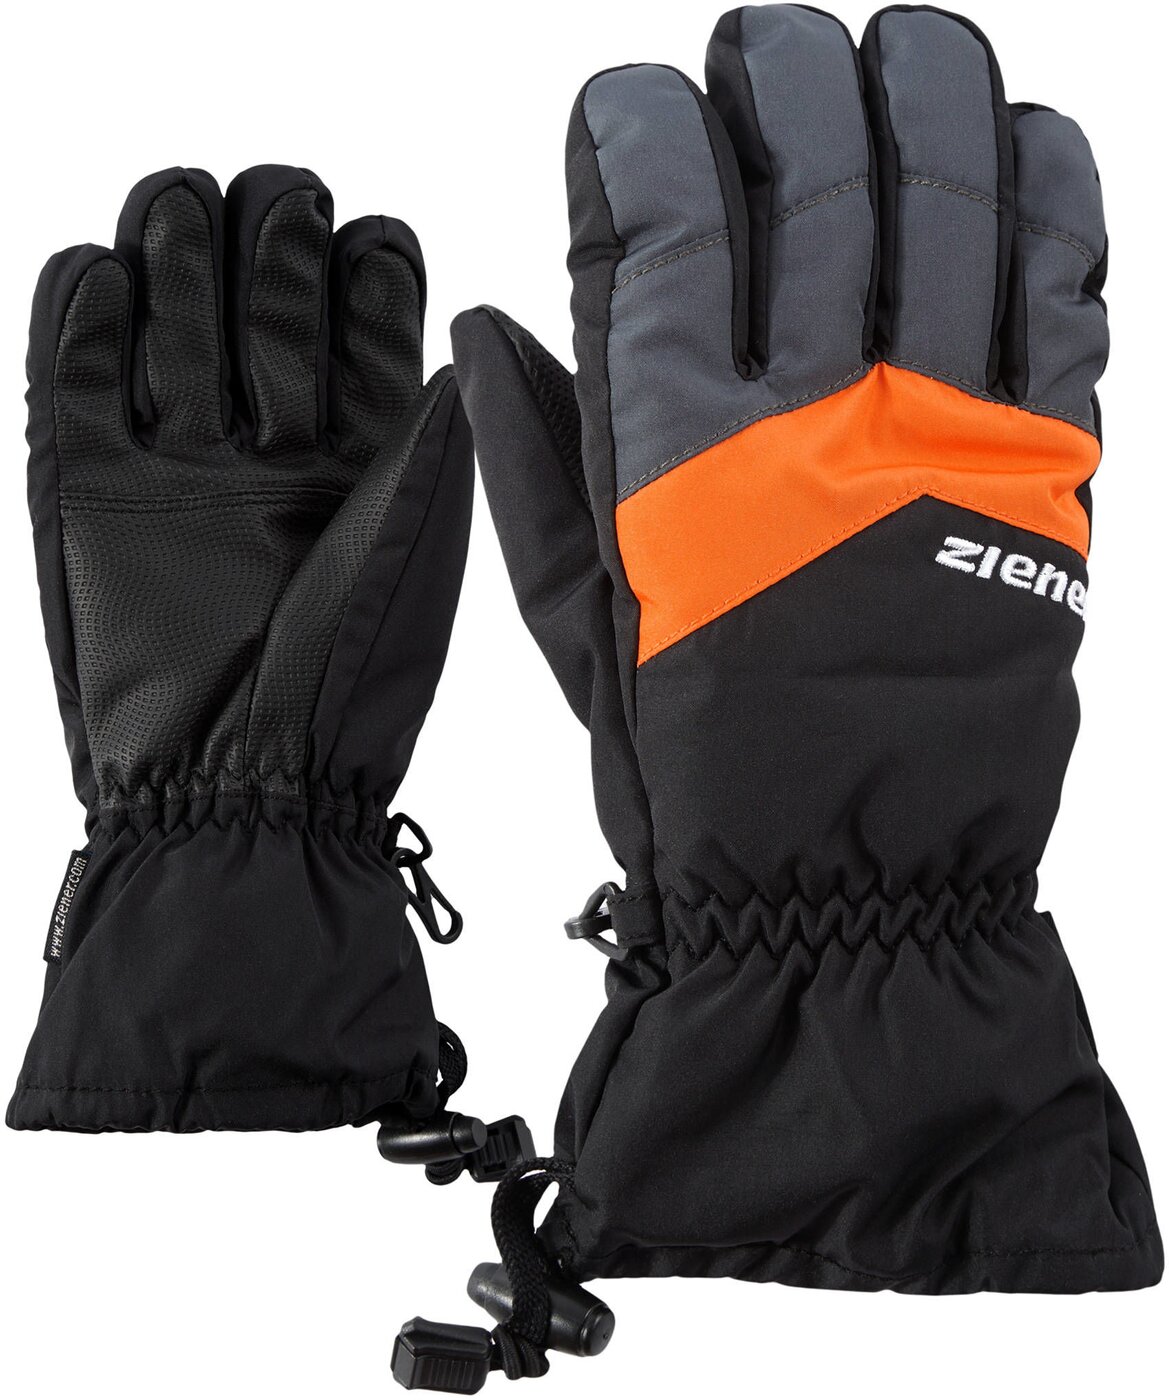 Ziener LETT AS(R) online glove junior kaufen